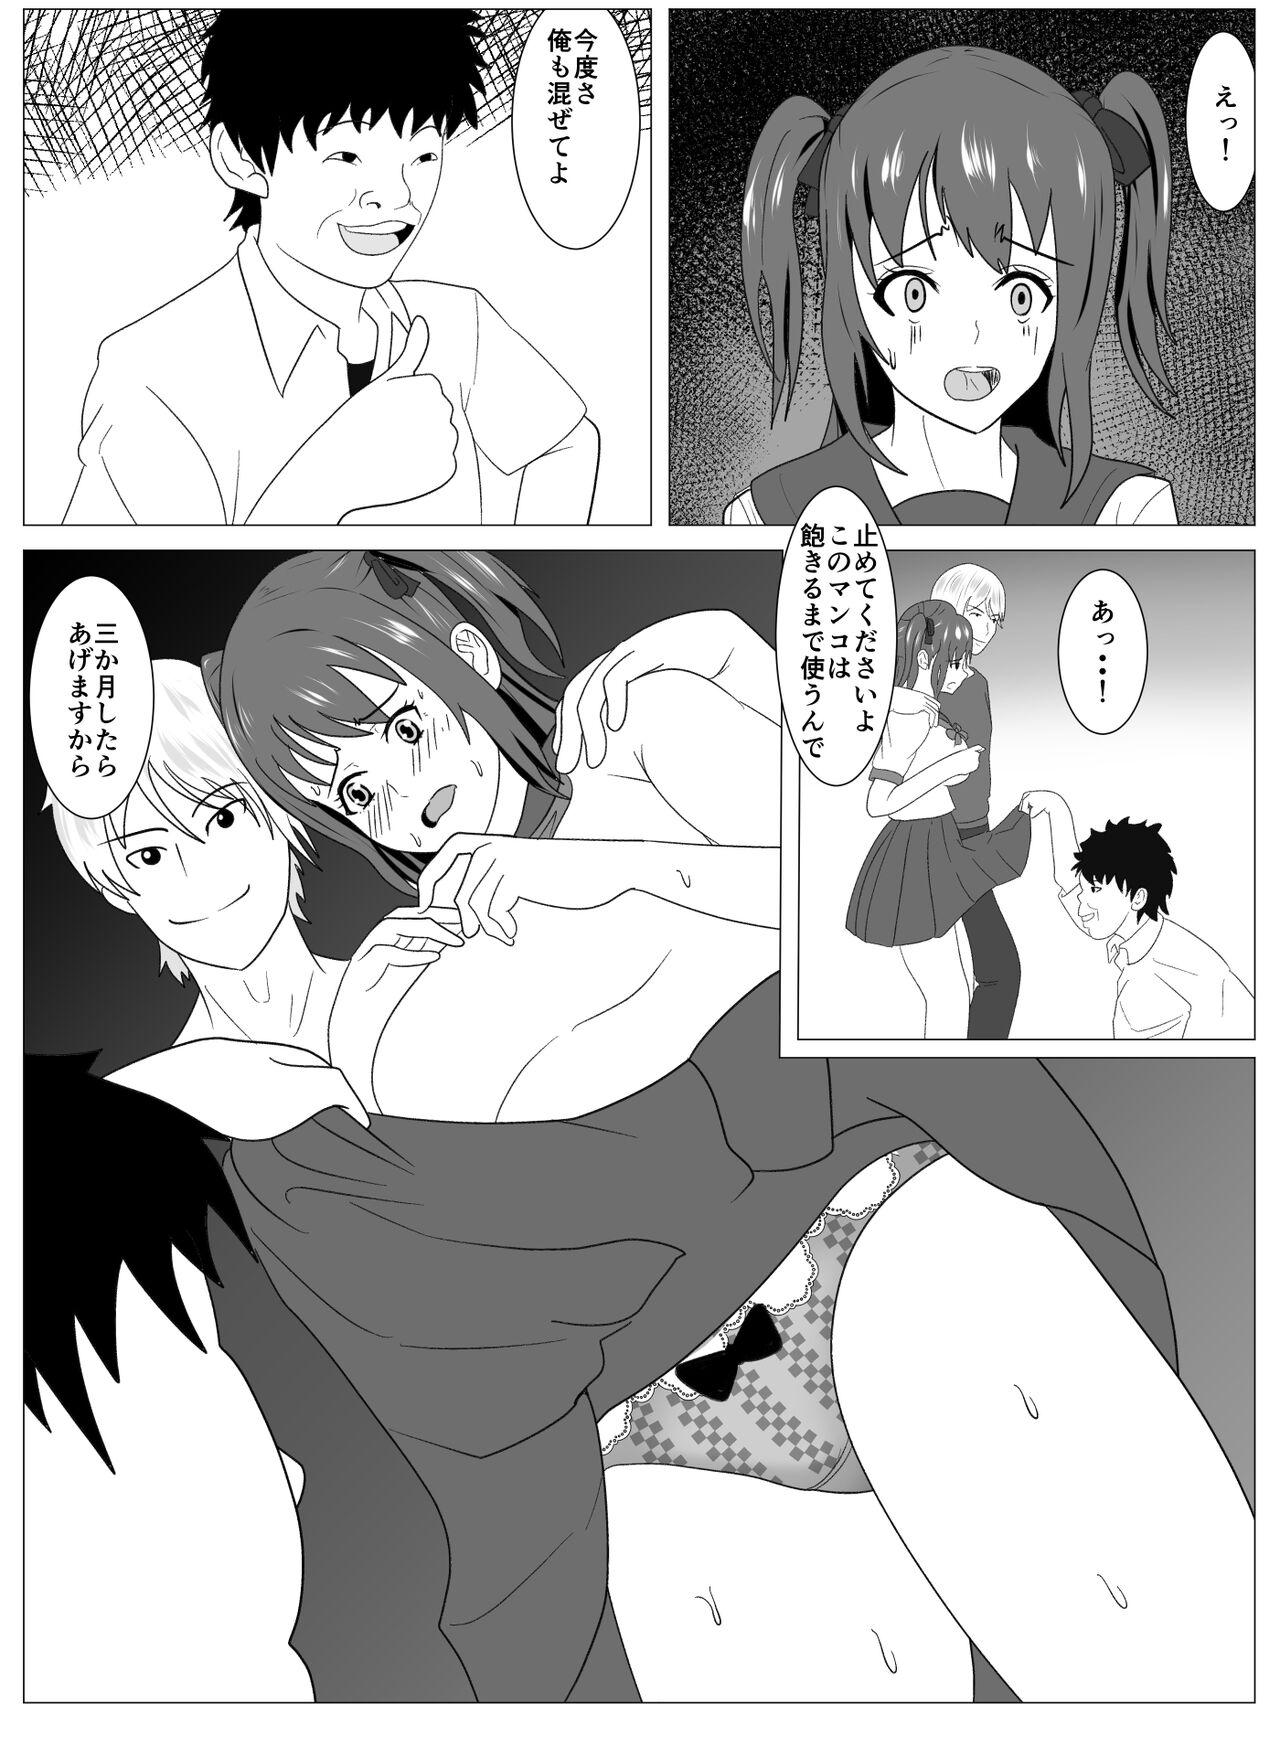 Athletic Boku to Tsukiatteru Idol wa Yarichin no Onahole - Original Missionary Position Porn - Page 78